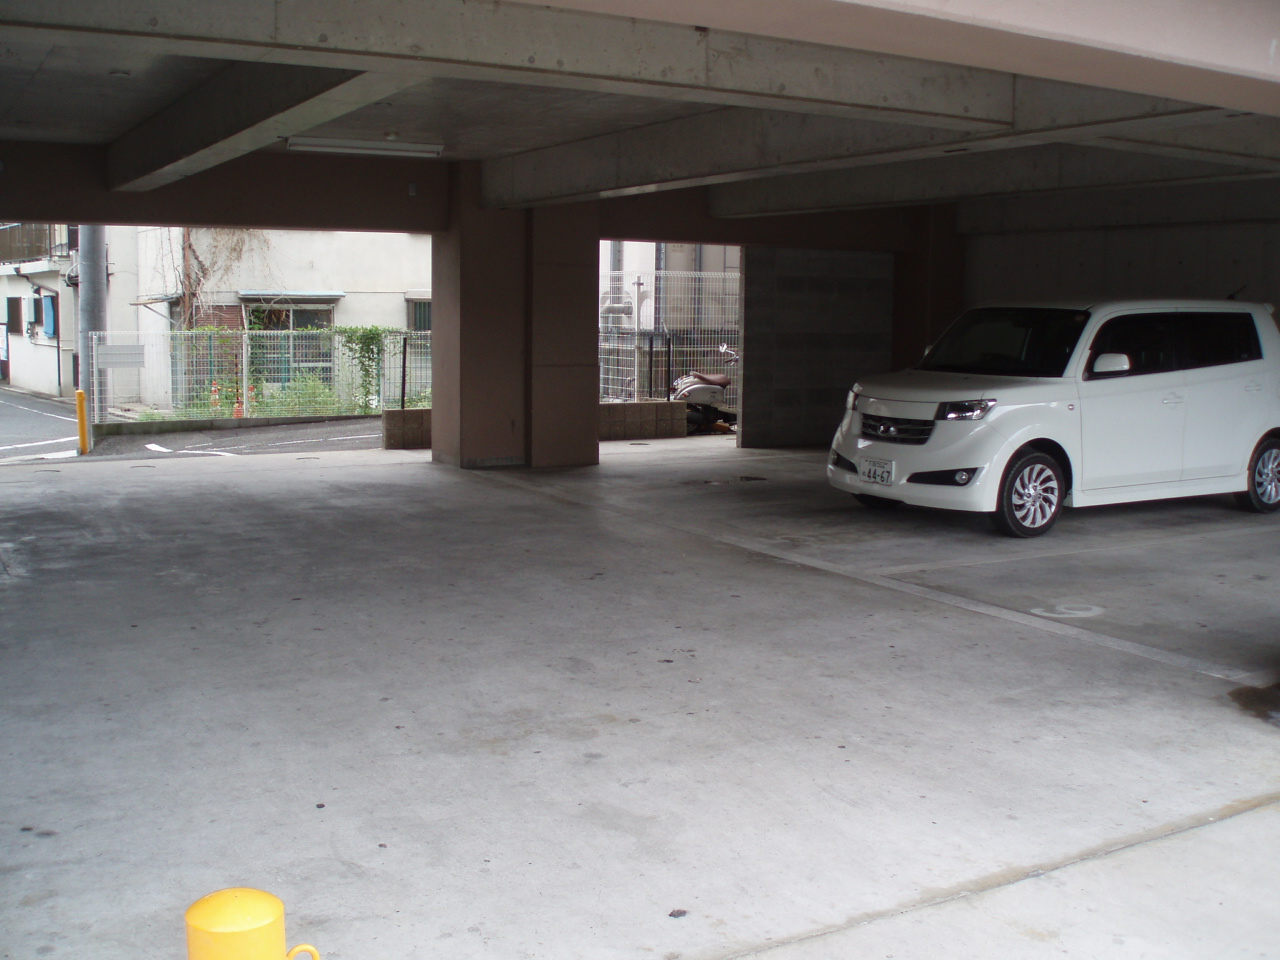 Parking lot. Mansion under parking!